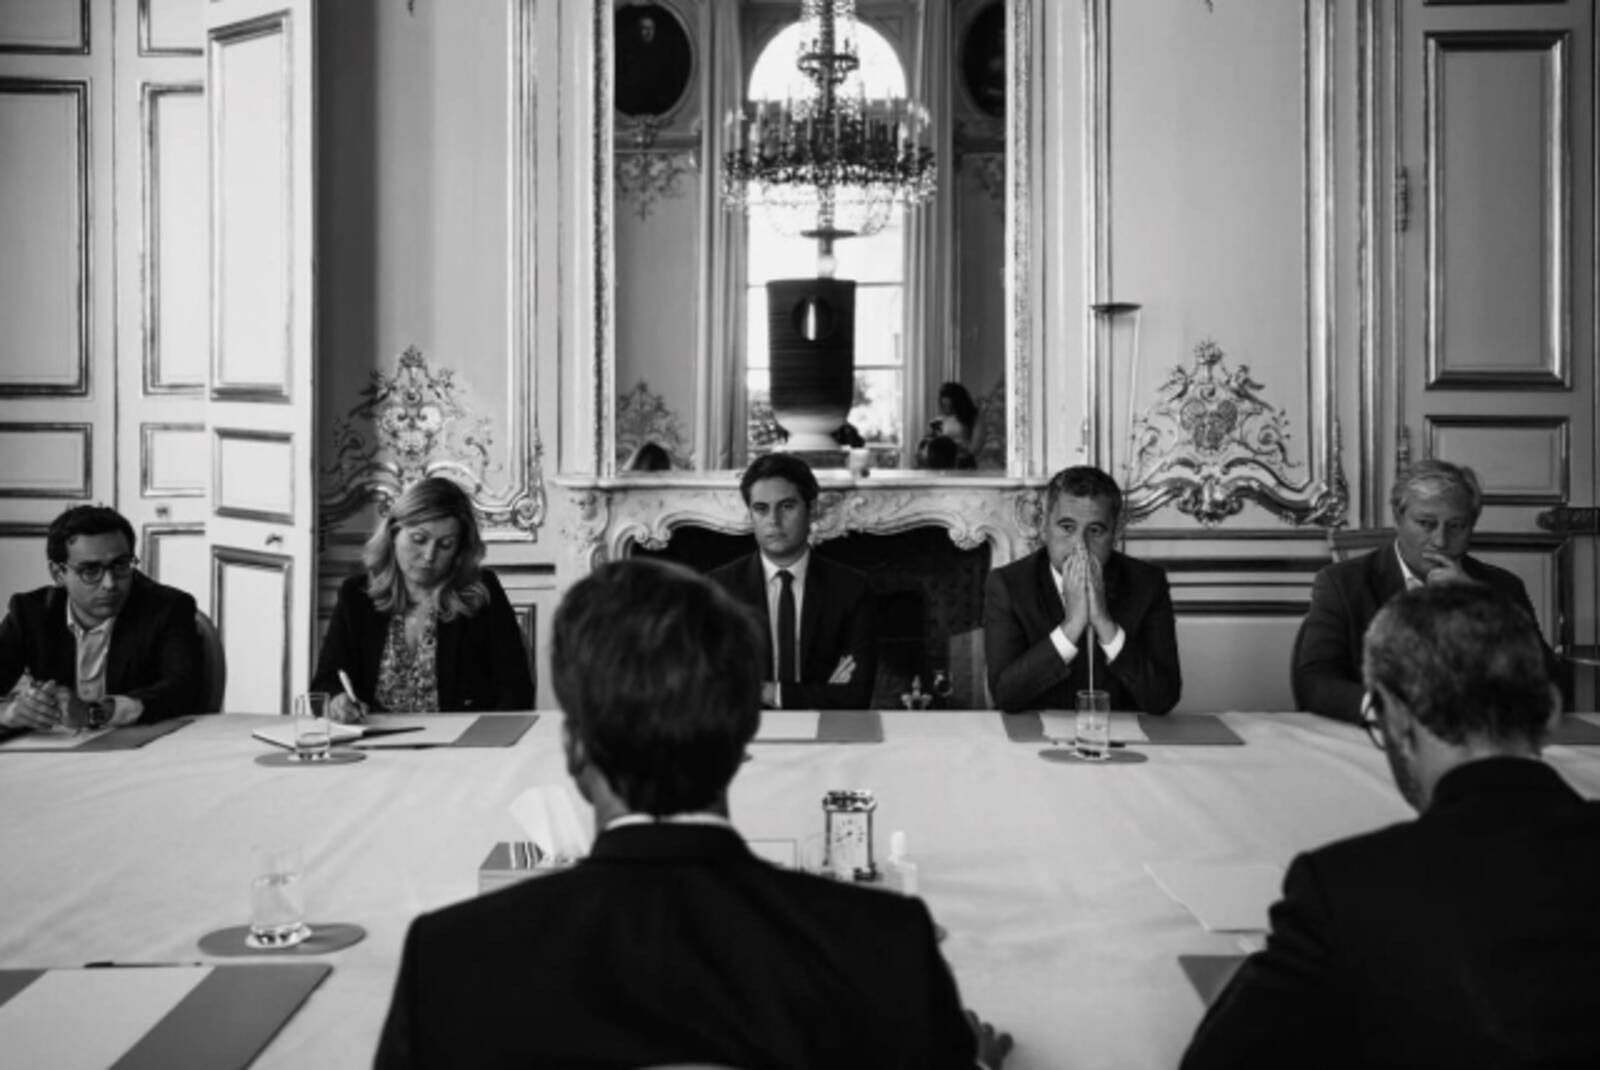 Cuộc họp của Tổng thống Pháp Emmanuel Macron với nội các tại Điện Elysee ngày 9/6. Ảnh: Instagram/